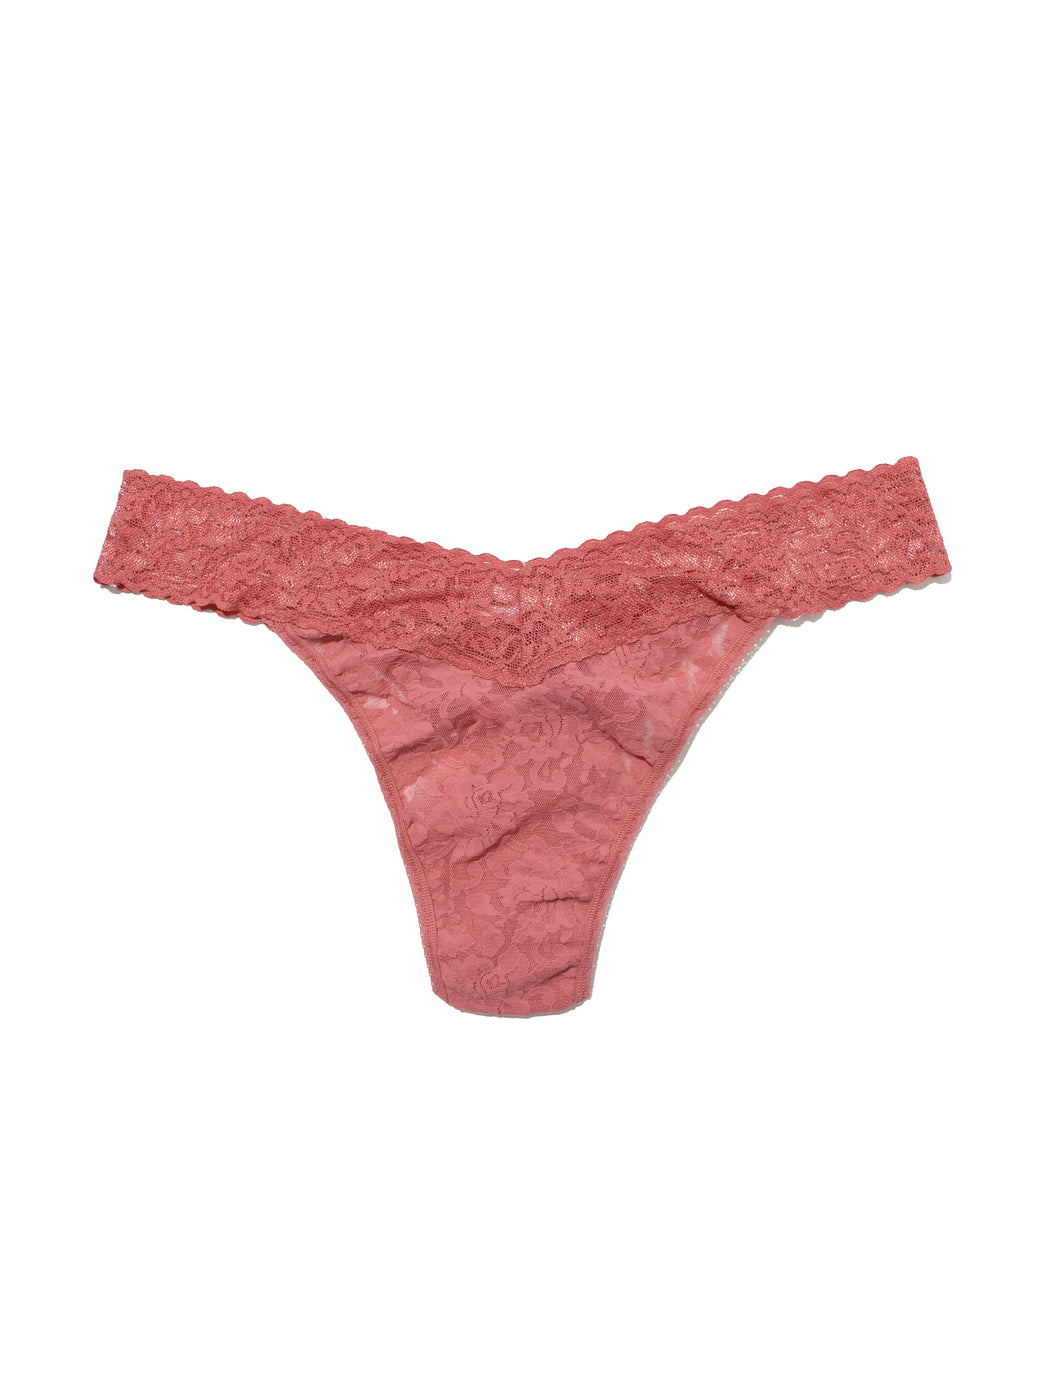 Plus Size Signature Lace Original Rise Thong Pink Sands